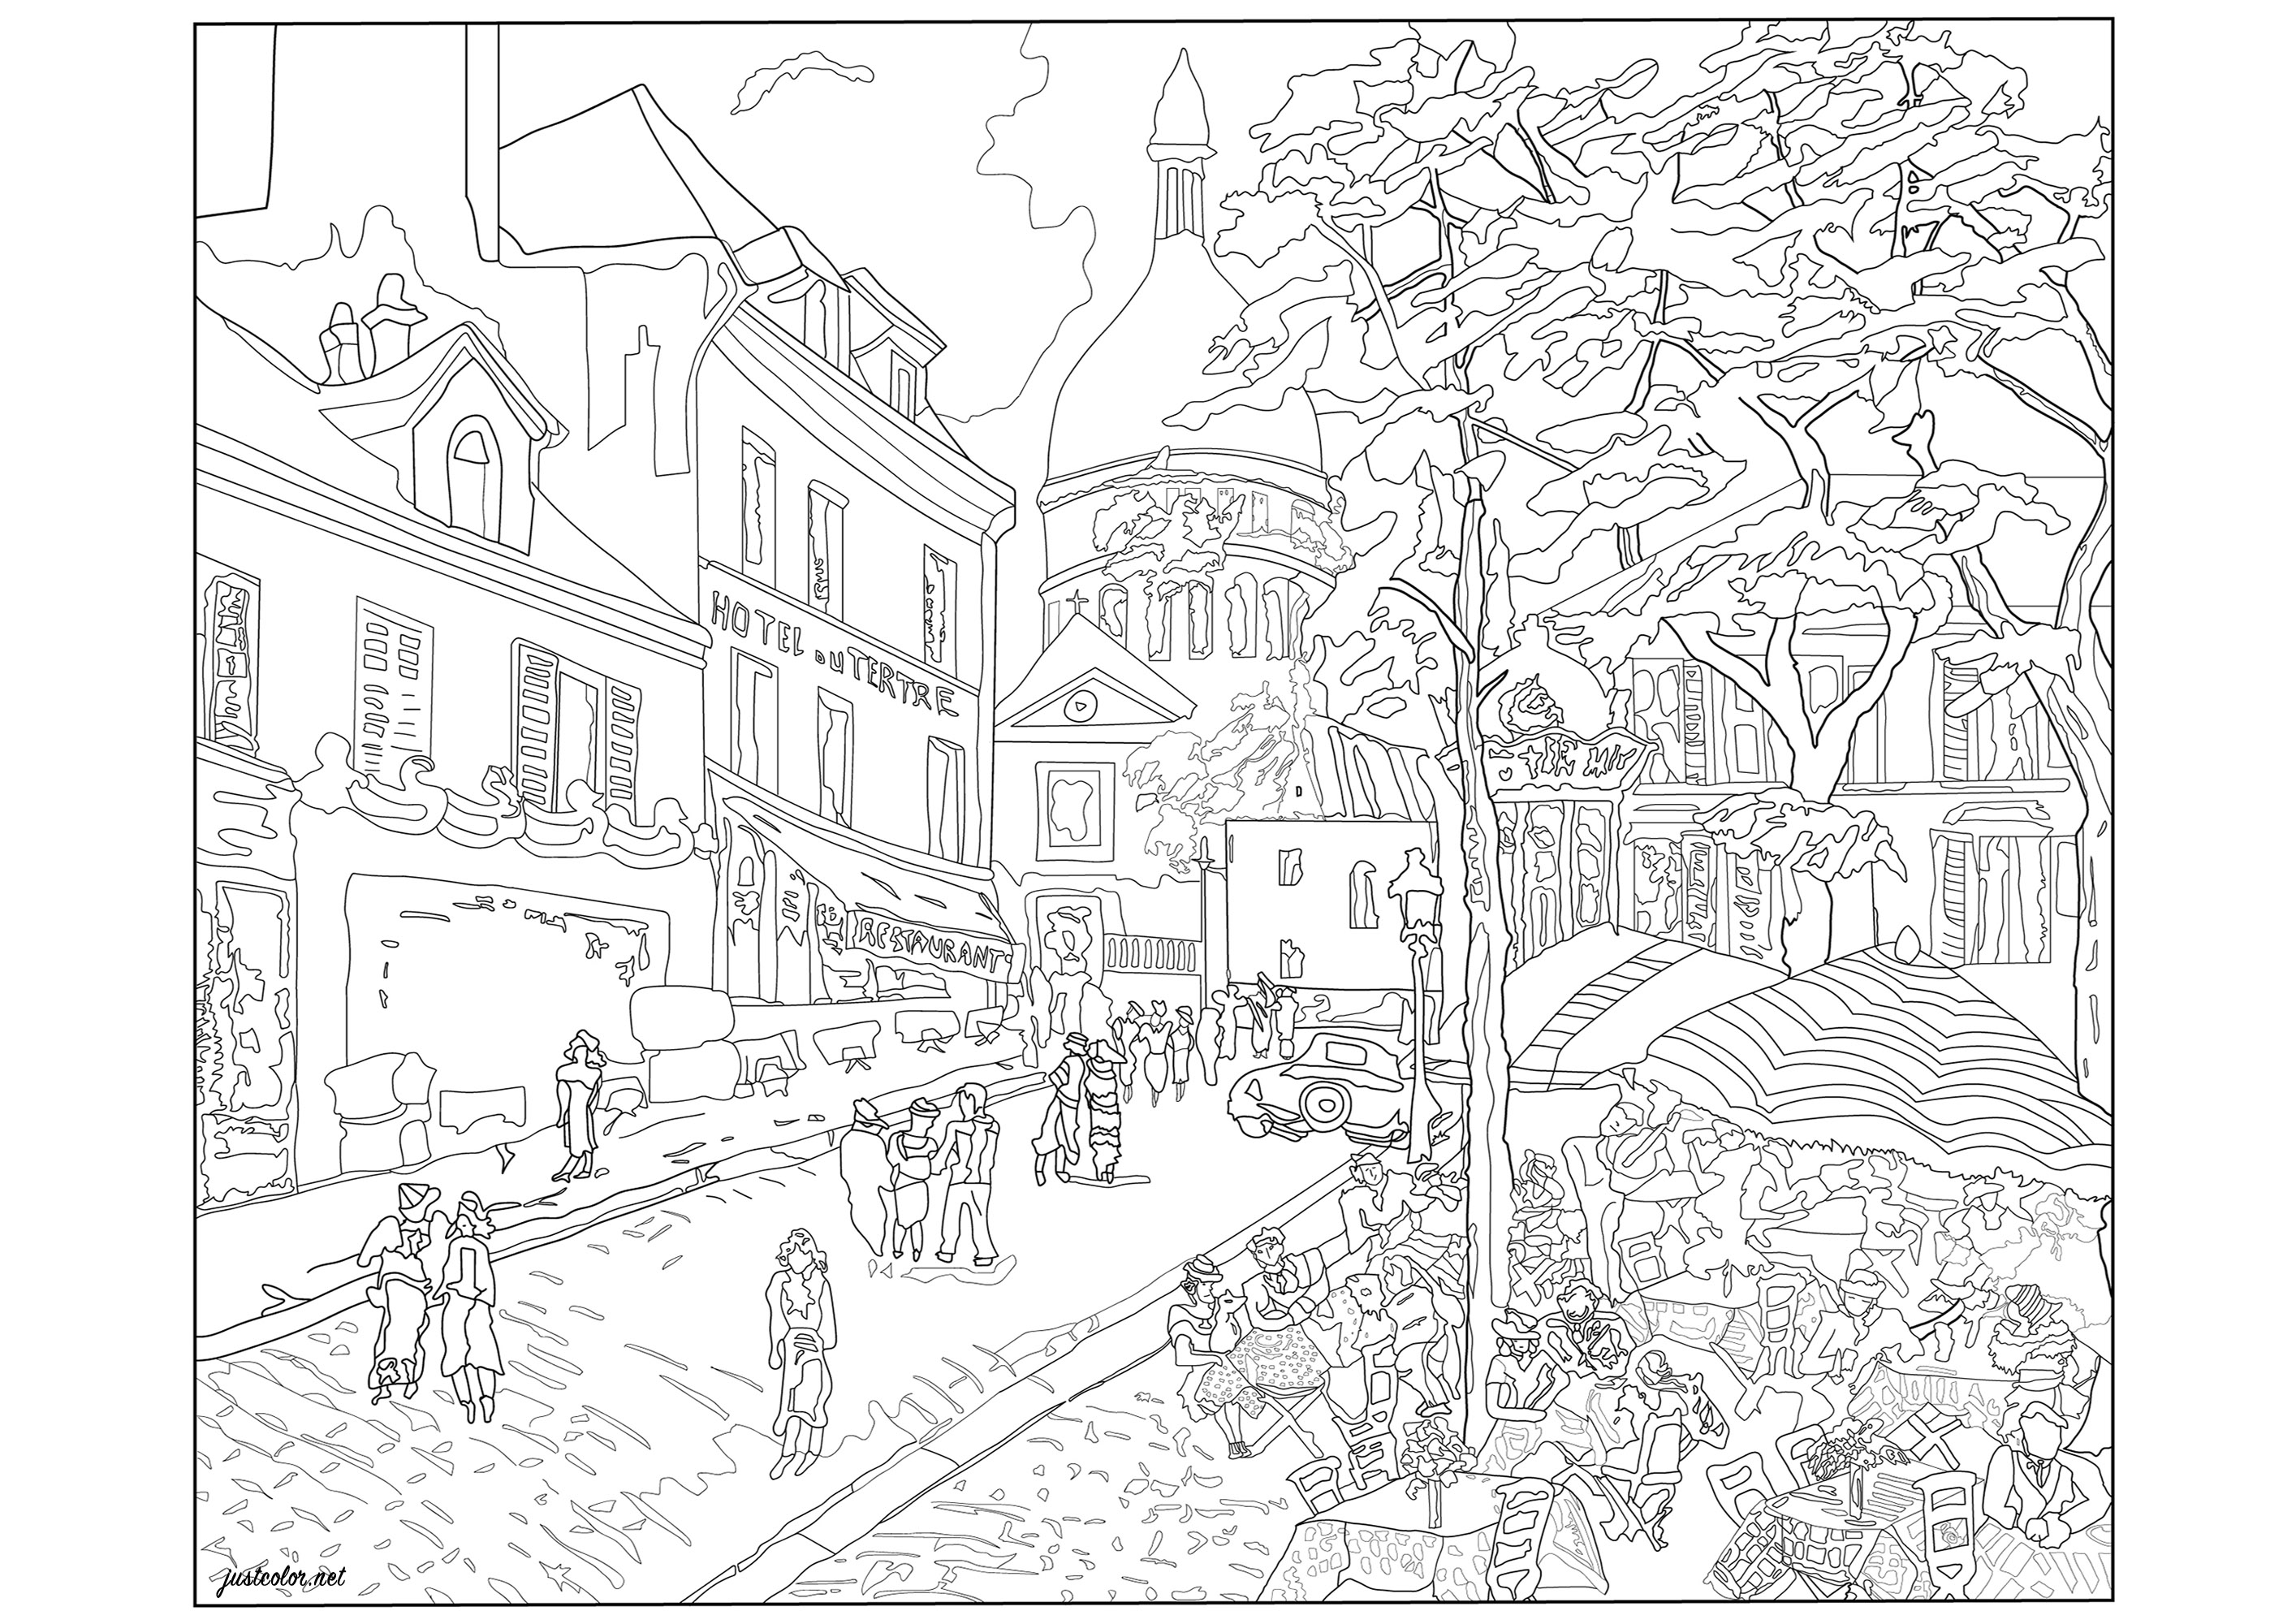 Il vivace quartiere parigino di Montmartre. Lo sapevate? Montmartre è un antico villaggio, costruito su una collina, che è stato annesso a Parigi nel 1860, Artista : Morgan